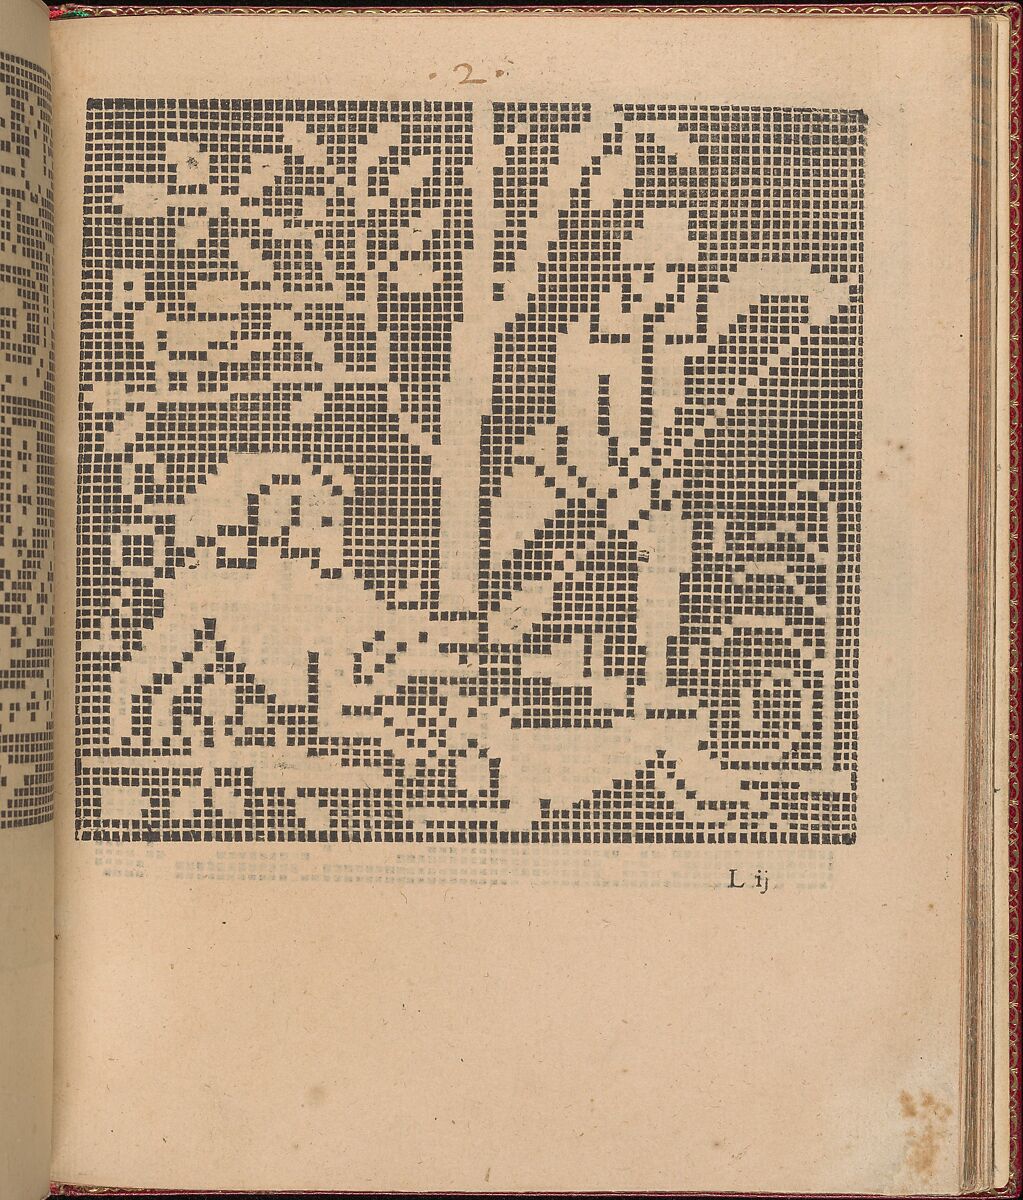 Les Singuliers et Nouveaux Portraicts... page 42 (recto), Federico de Vinciolo (Italian, active Paris, ca. 1587–99), Woodcut 